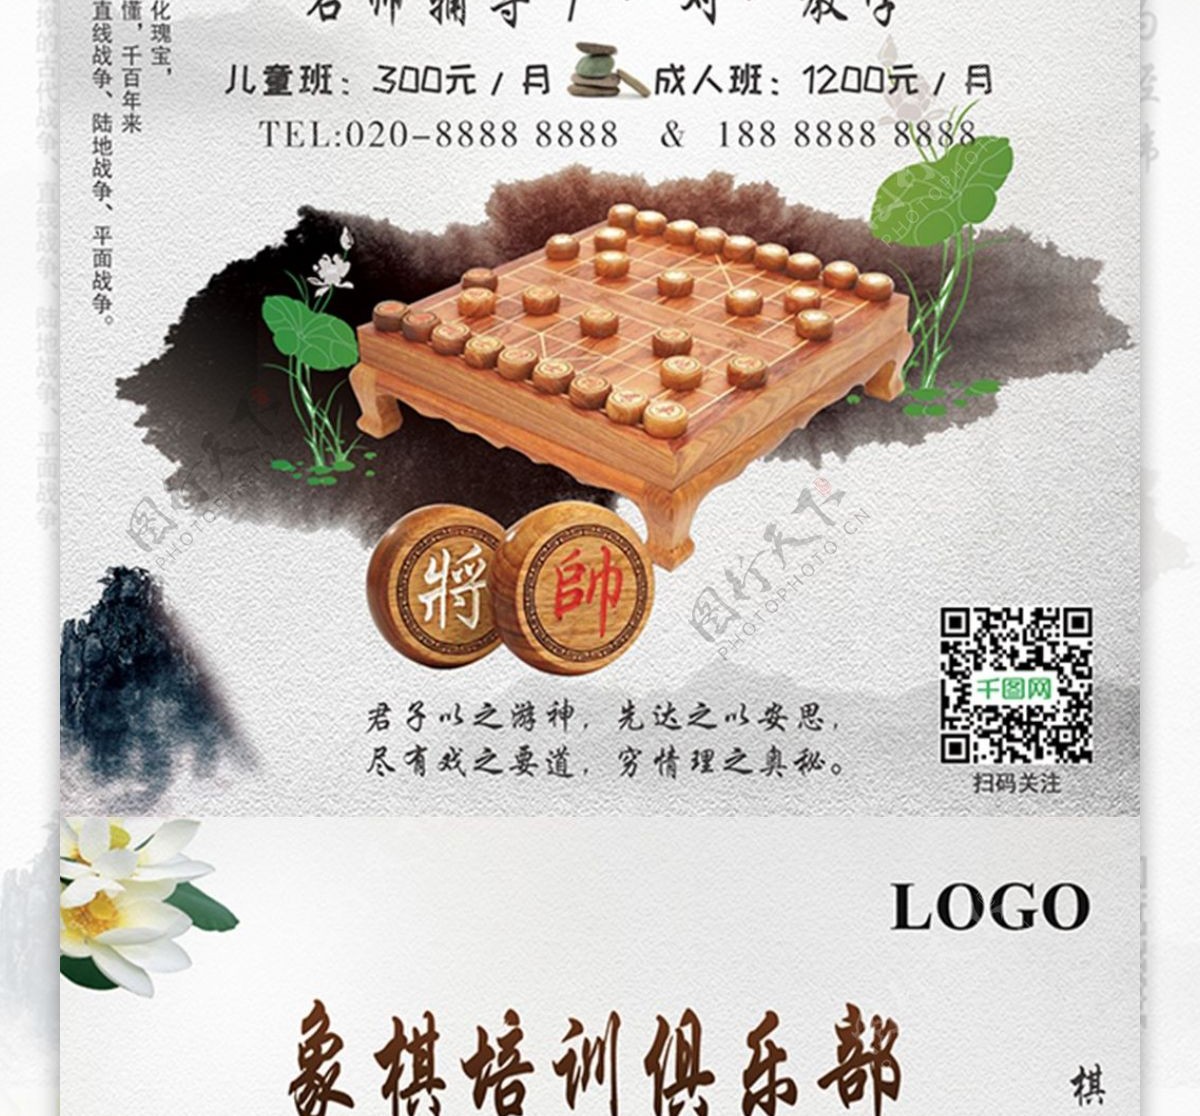 中国风象棋俱乐部宣传单